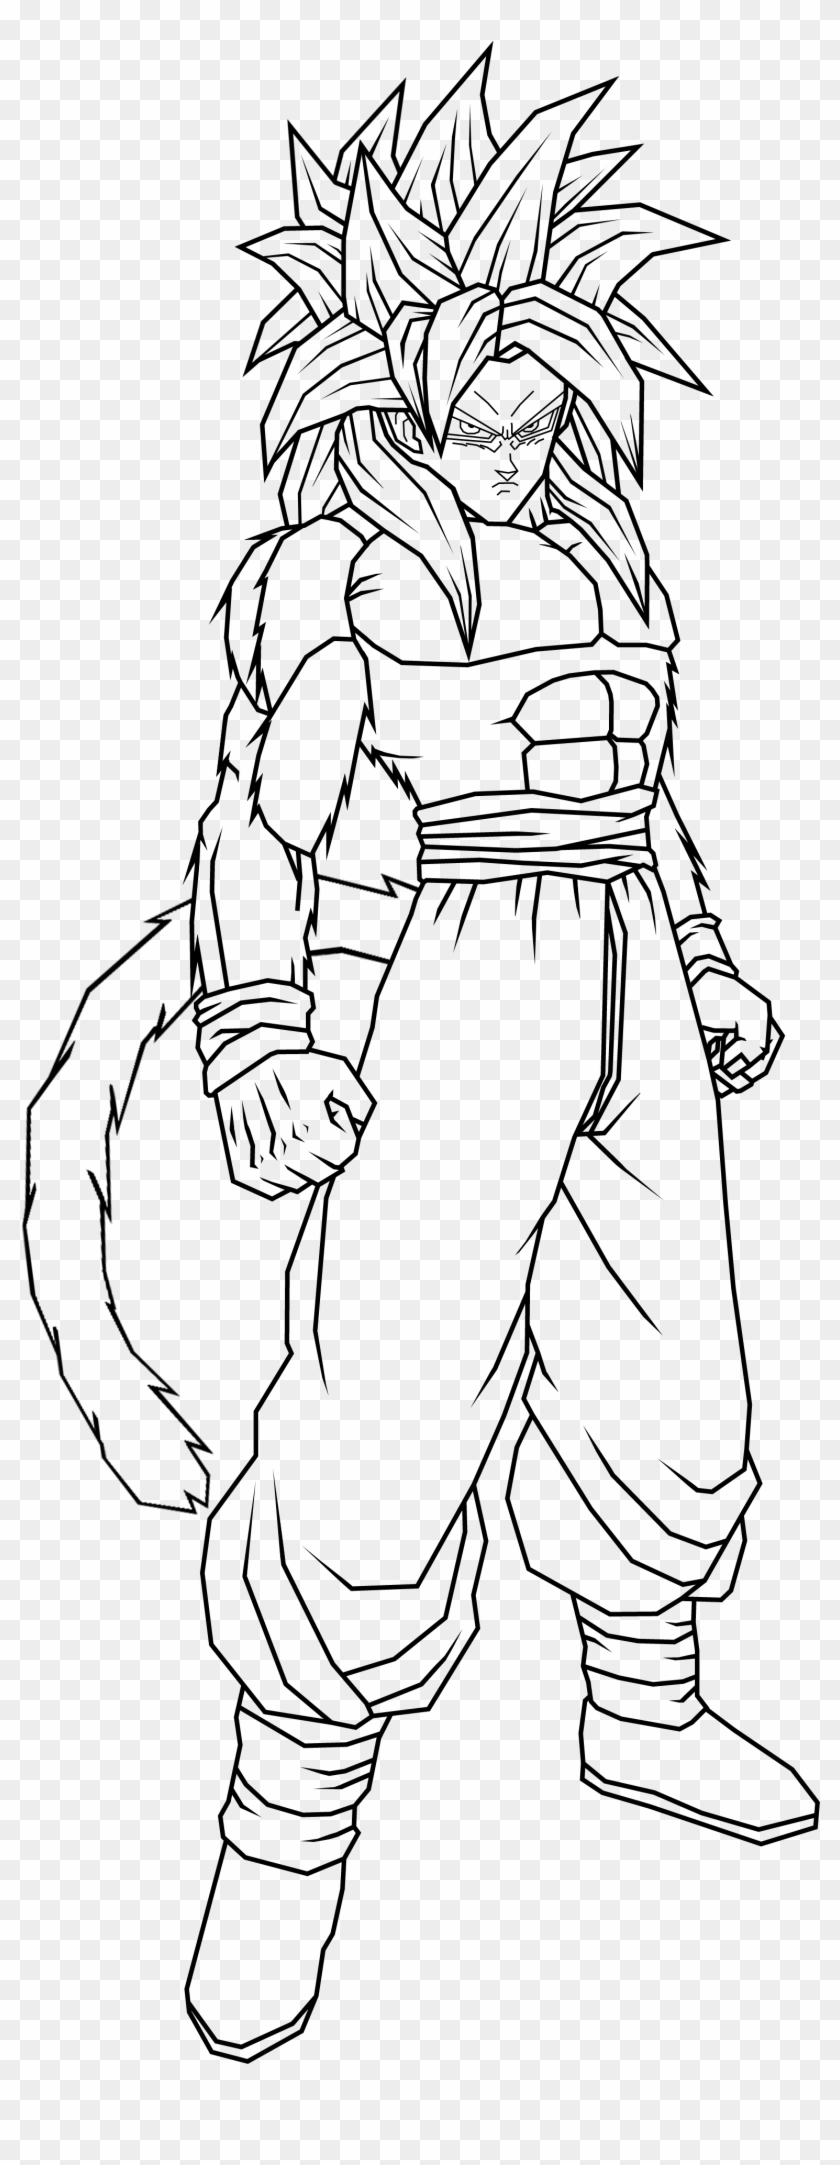 Goku Super Saiyan 4 Coloring Pictures - Goku Fase 4 Para Dibujar Clipart